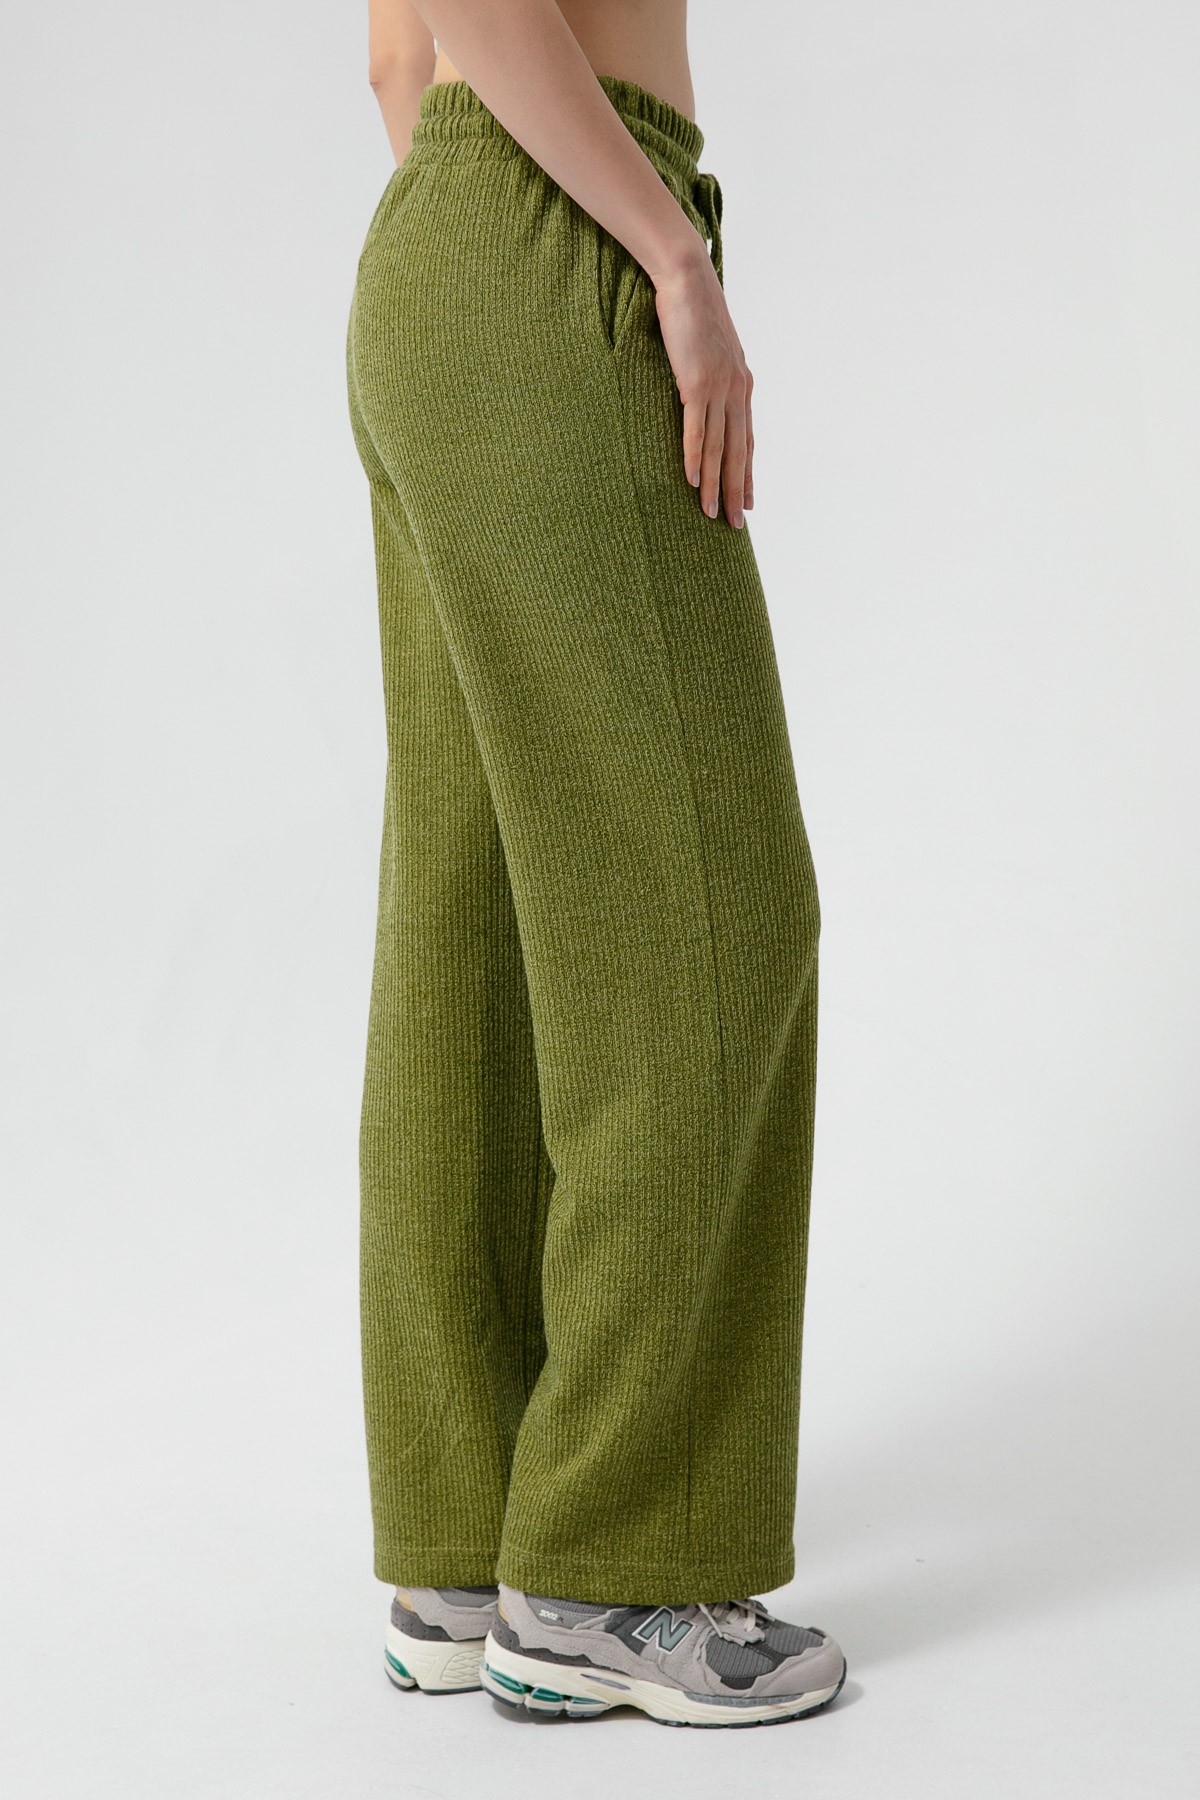 Kadın Beli Lastikli Örme Pantolon - Yeşil